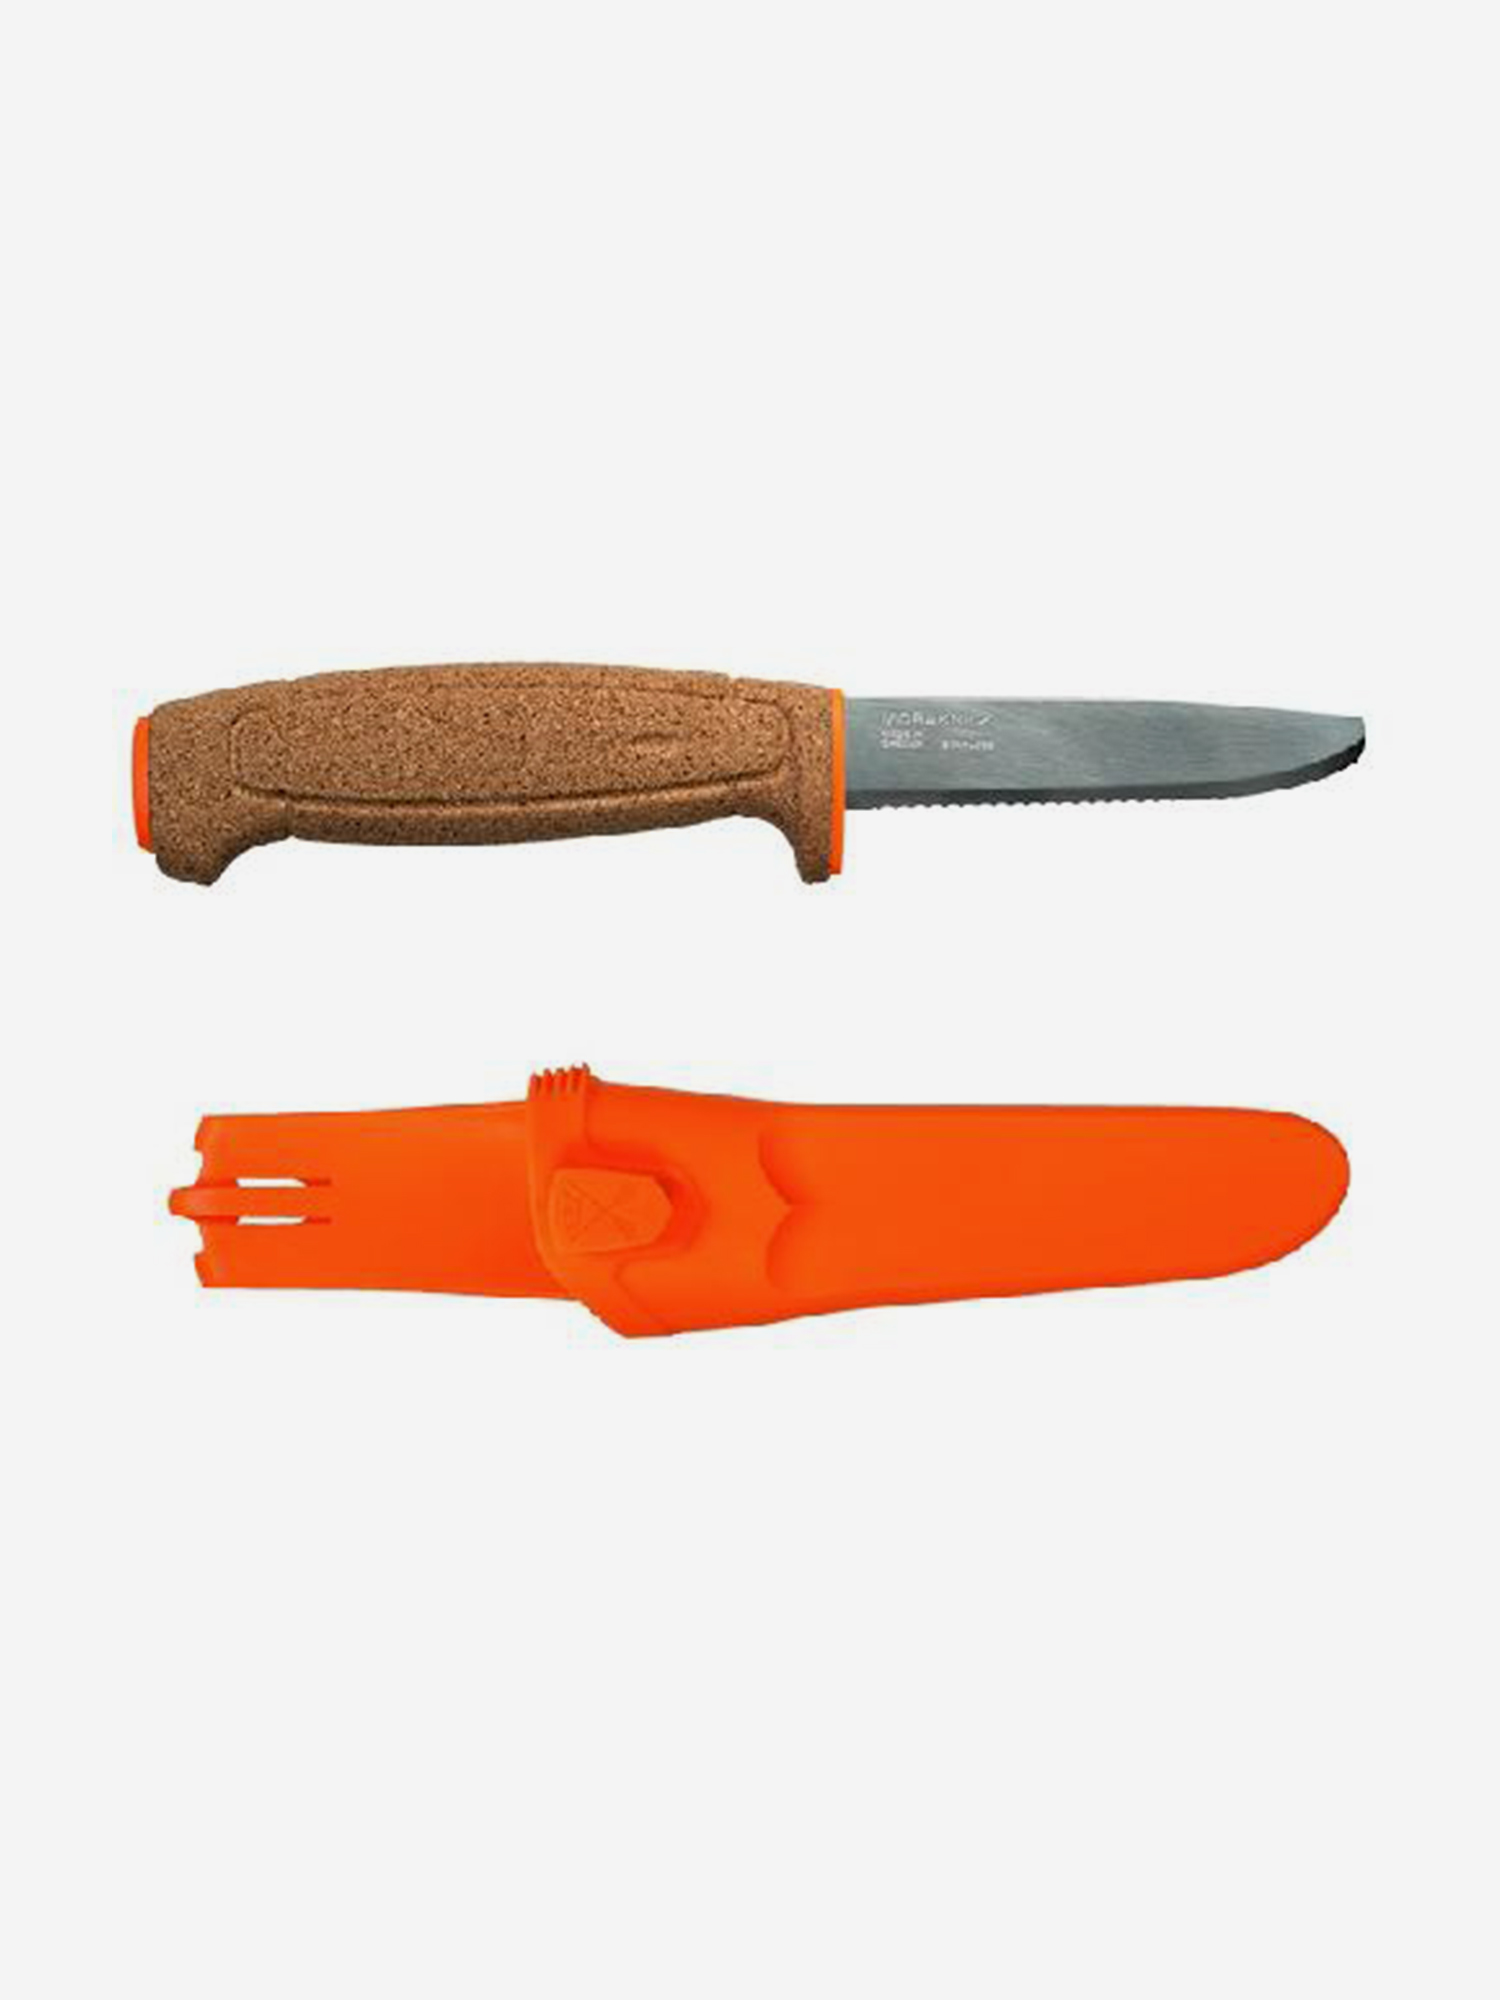 Нож Morakniv Floating Serrated Knife, нержавеющая сталь, пробковая ручка,, 13131, Оранжевый нож morakniv fishing comfort fillet 155 нержавеющая сталь 13869